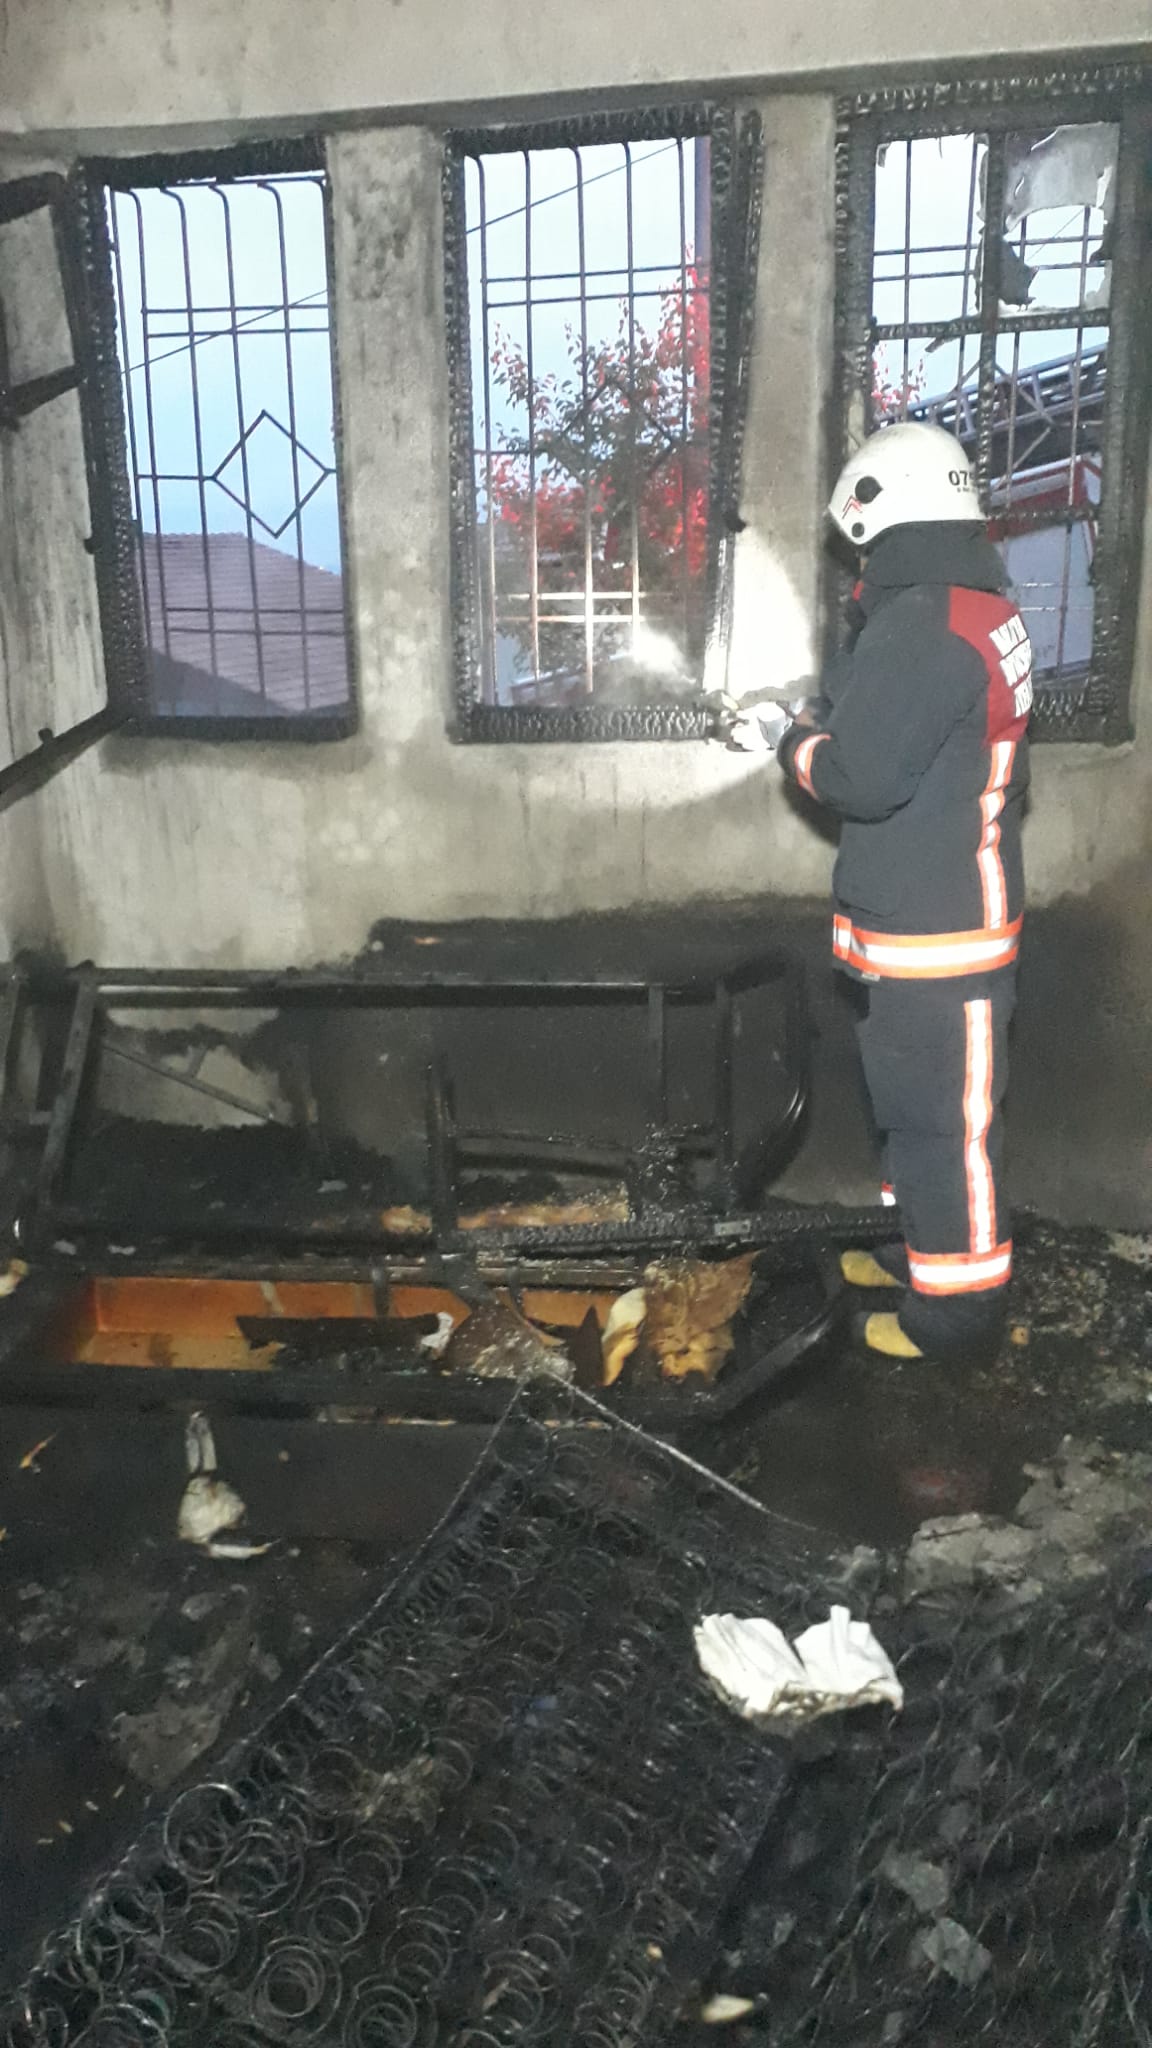 Malatya’da bir evde çıkan yangında dumandan zehirlenen 2 kişi hastaneye kaldırıldı. İtfaiye ekipleri yangını kısa sürede söndürerek kontrol altına aldı.